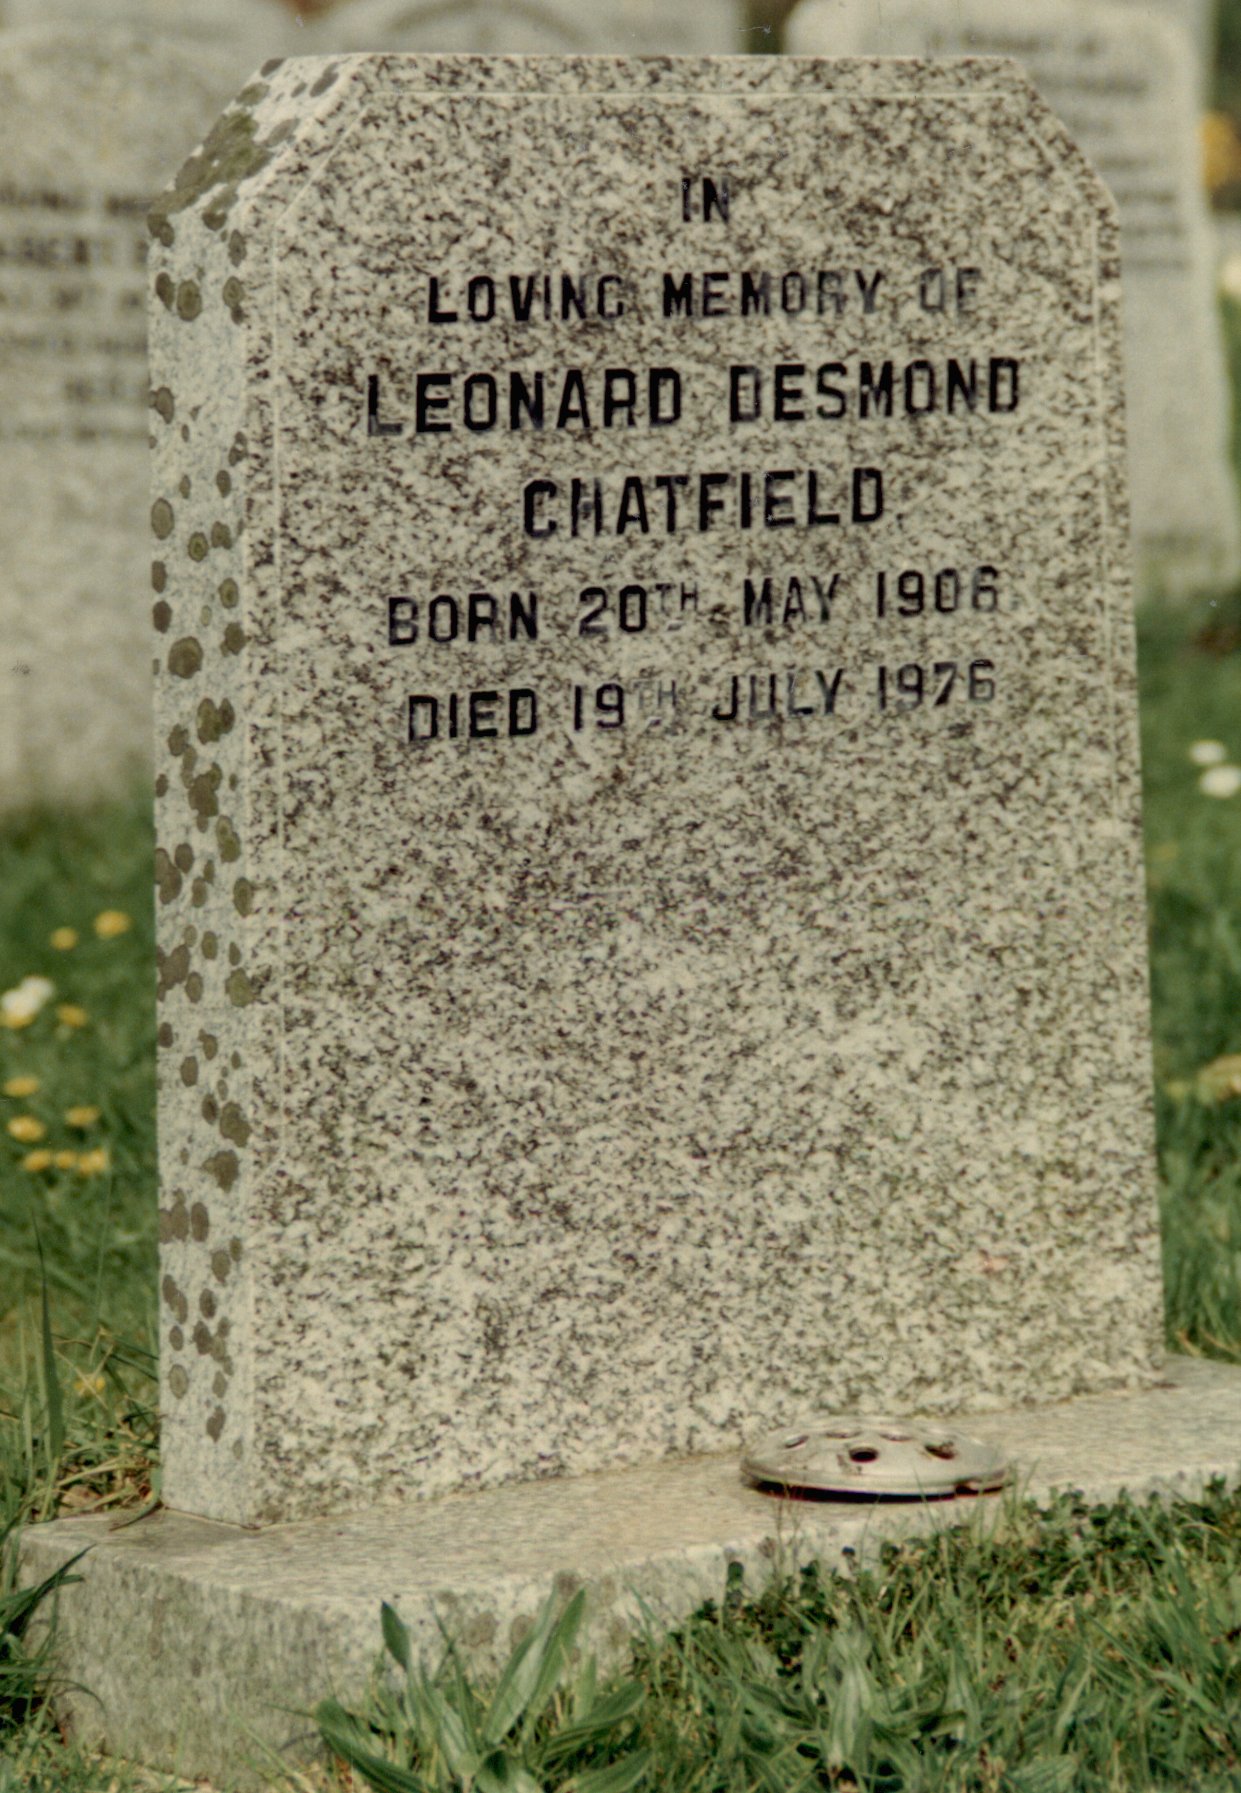 Grave Chatfield Leonard Desmond.jpg